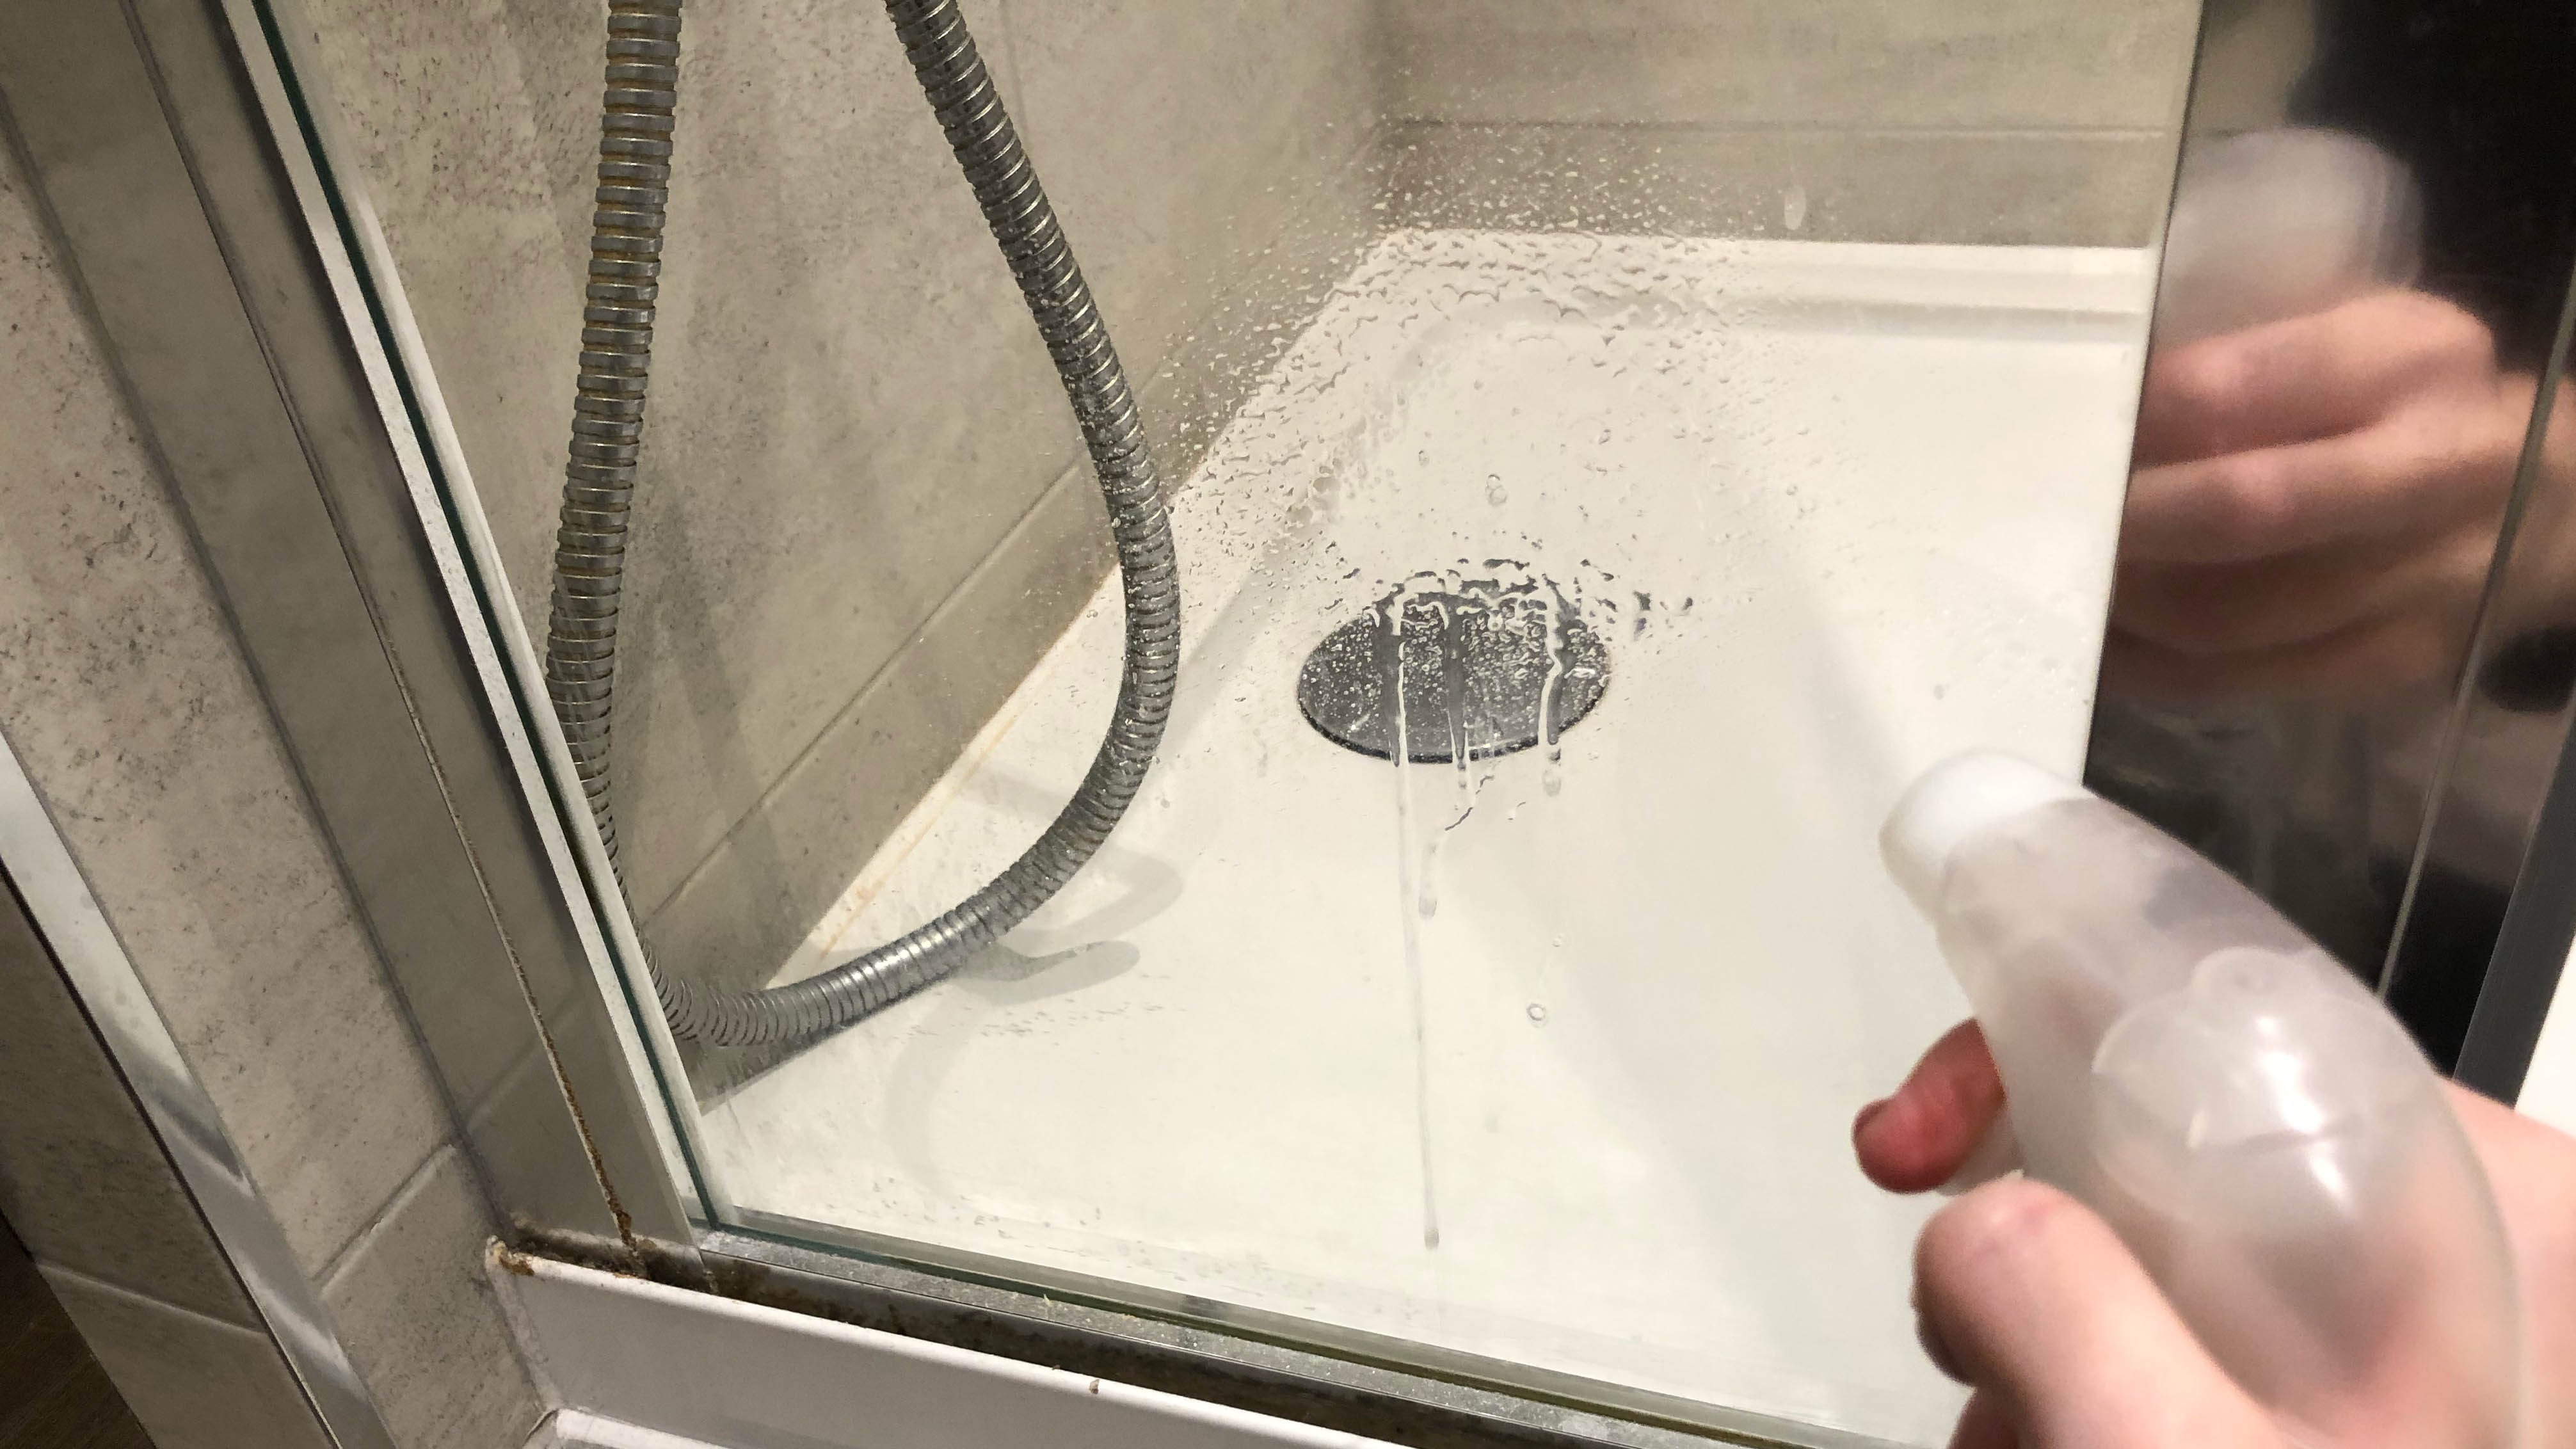 شخص يرش محلول ماء الخل على لوح زجاجي أثناء الاستحمام